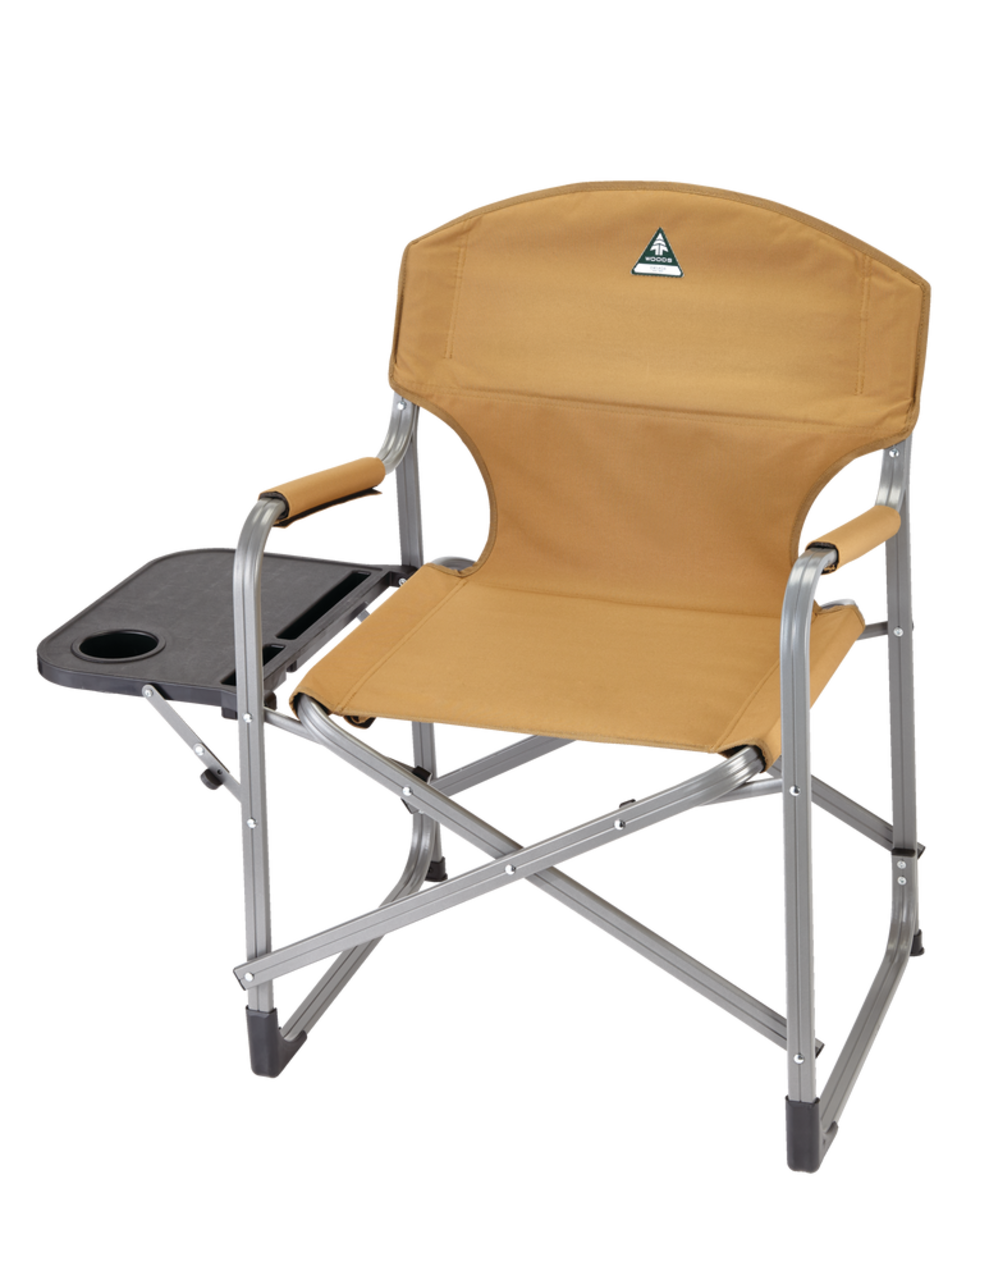 Table - Mobilier de camping - Camping - Plein-Air - Nos Accessoires